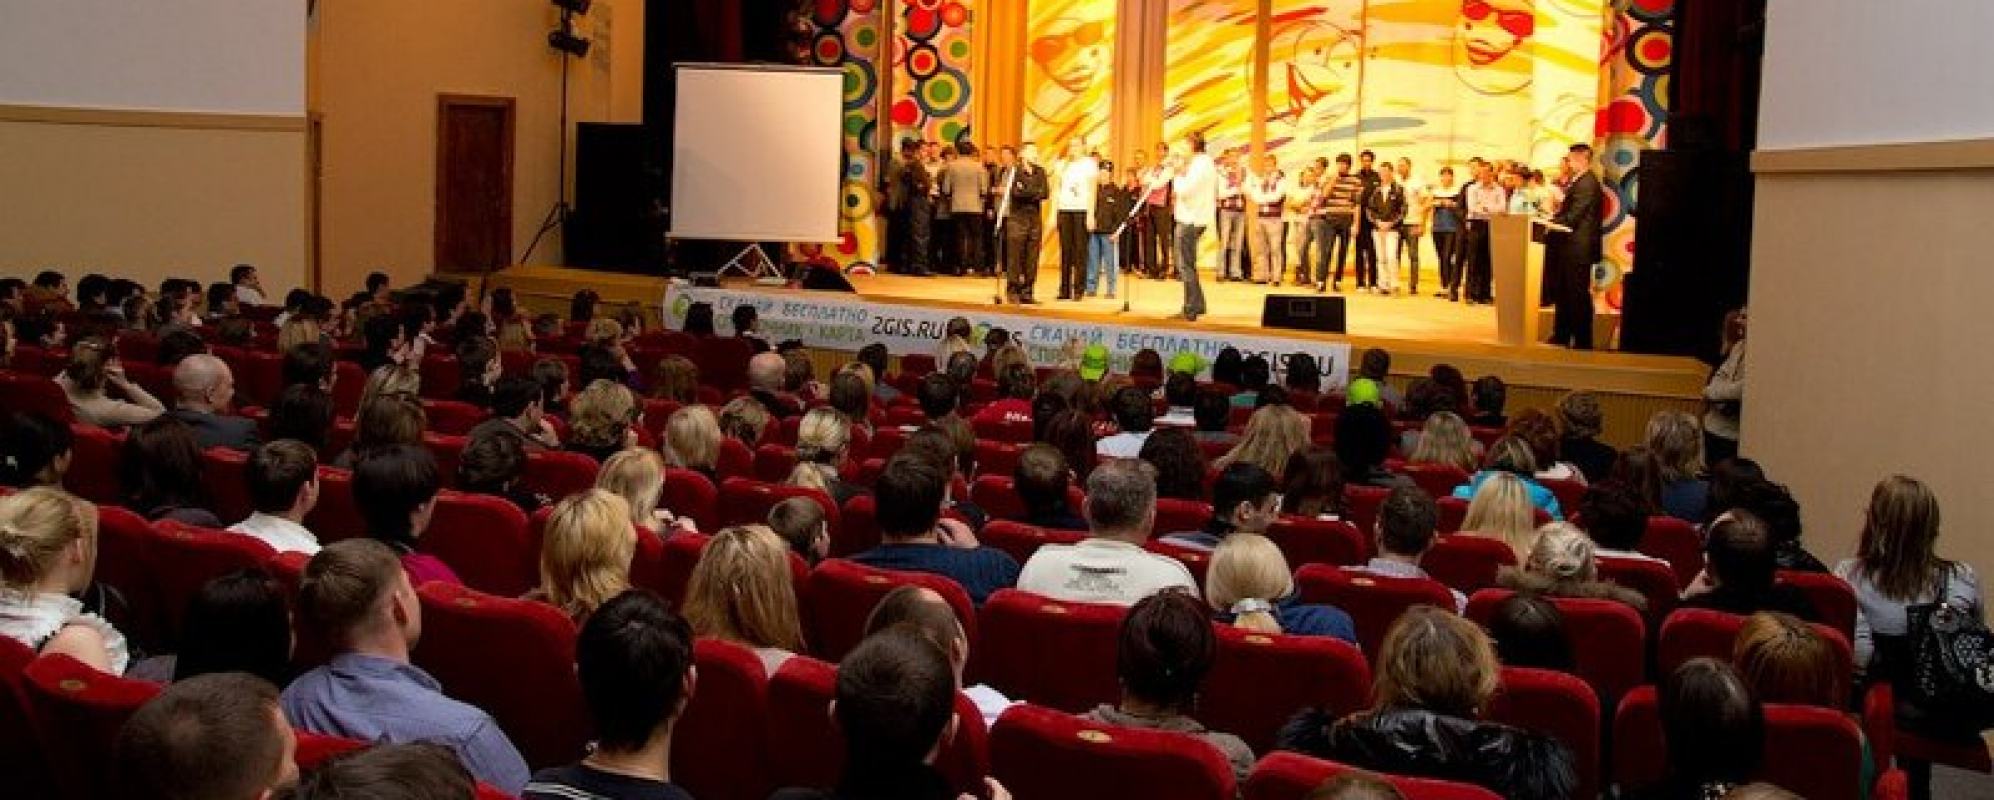 Фотографии концертного зала Малый зал ДК Пролетарка